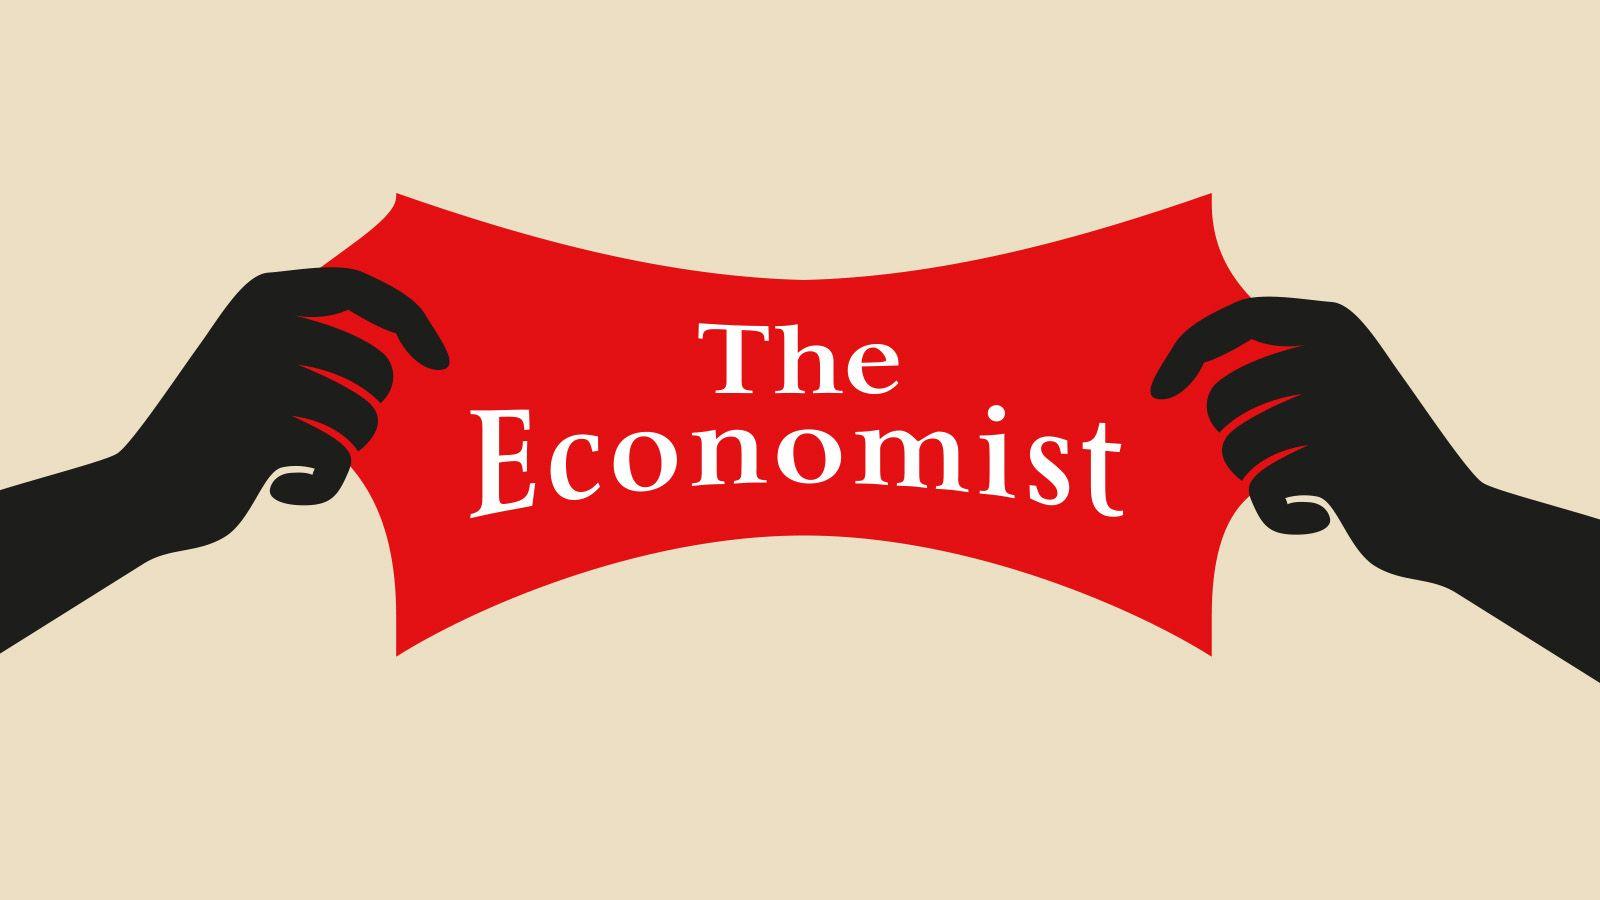 Economist.com Logo - Is The Economist left- or right-wing? - The Economist explains itself